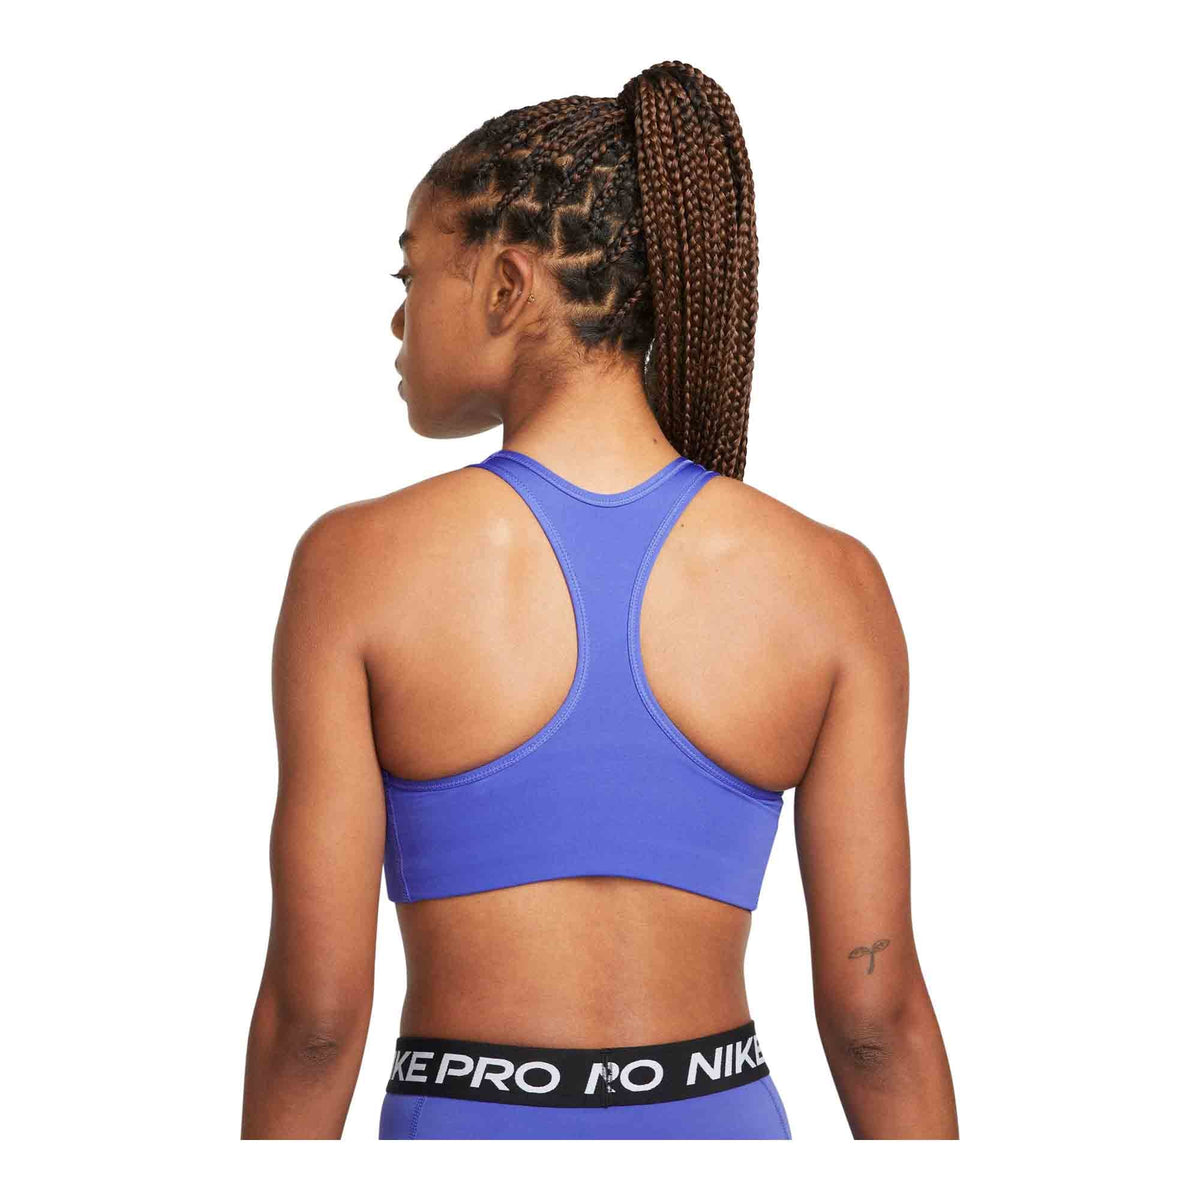 Nike Training Swoosh Dri-FIT longline medium support sports bra in